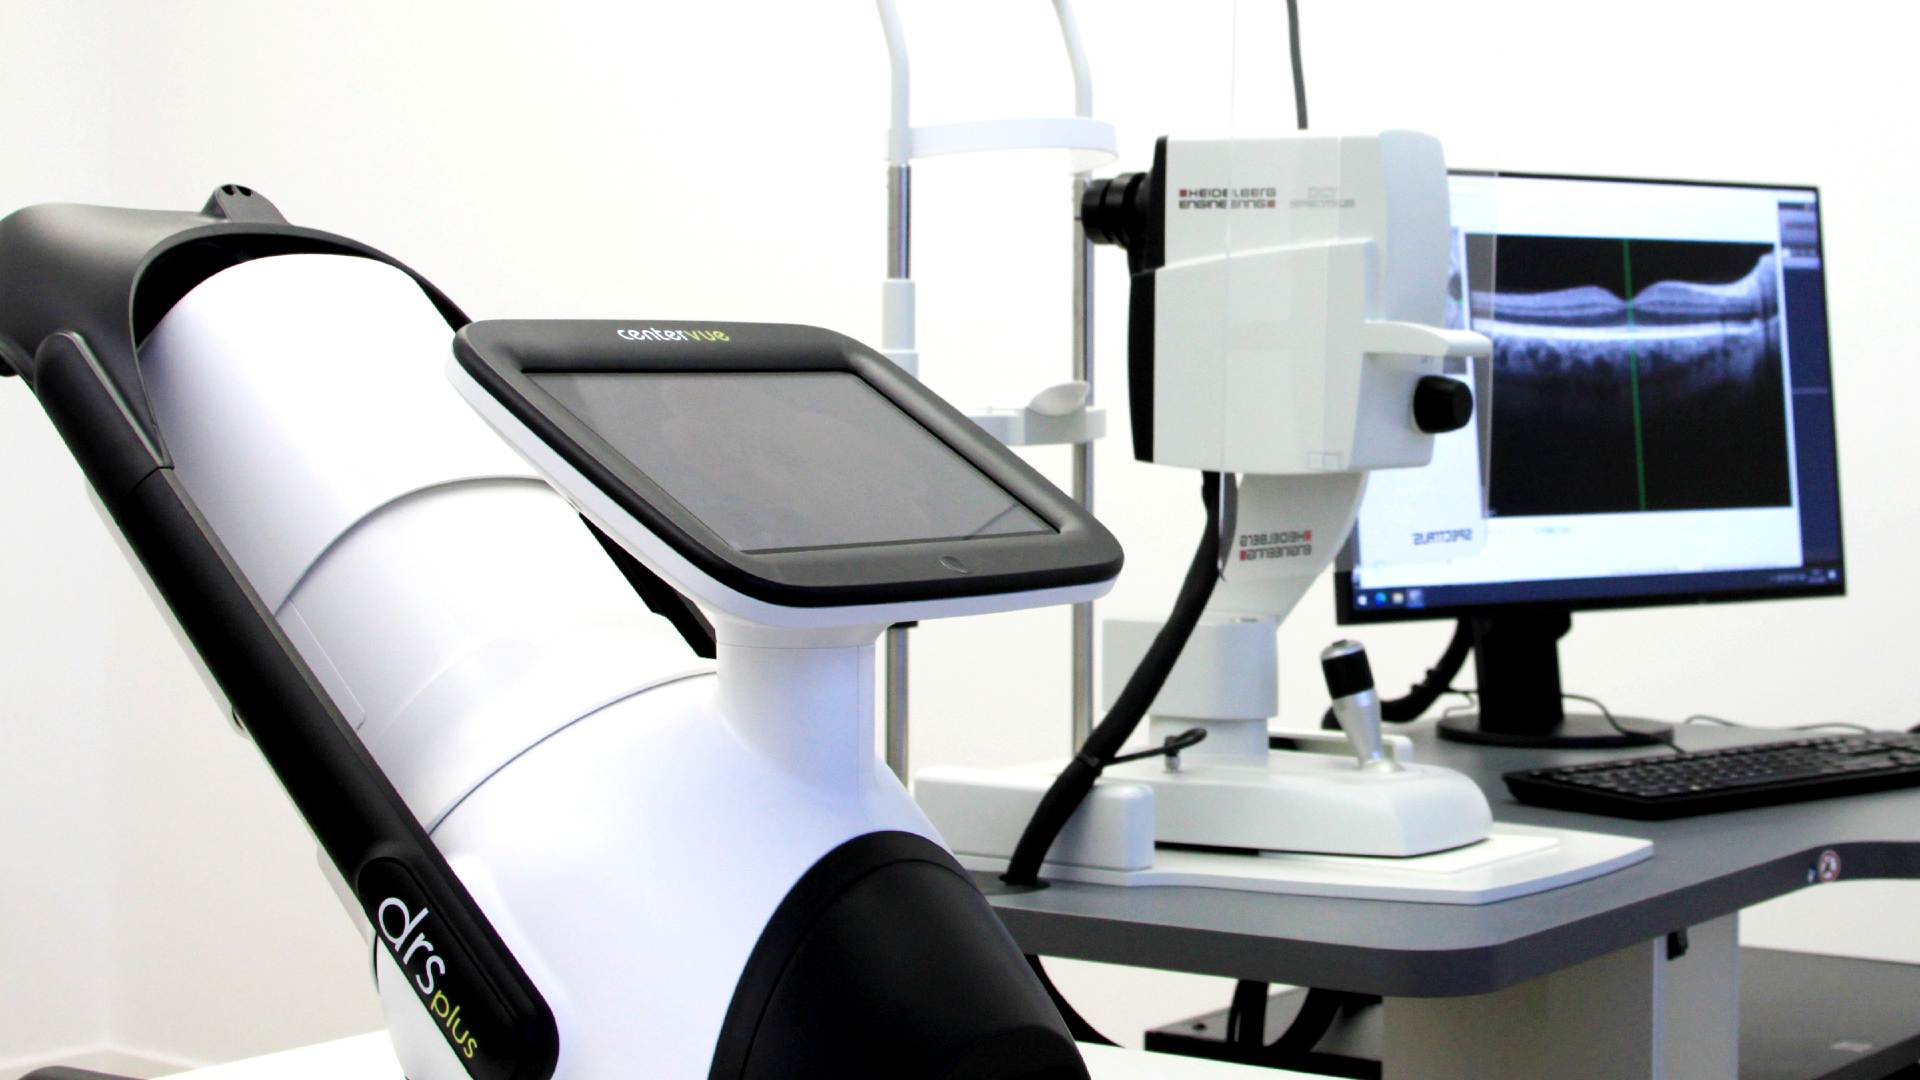 ofta-ascona-studio-di-oftalmologia